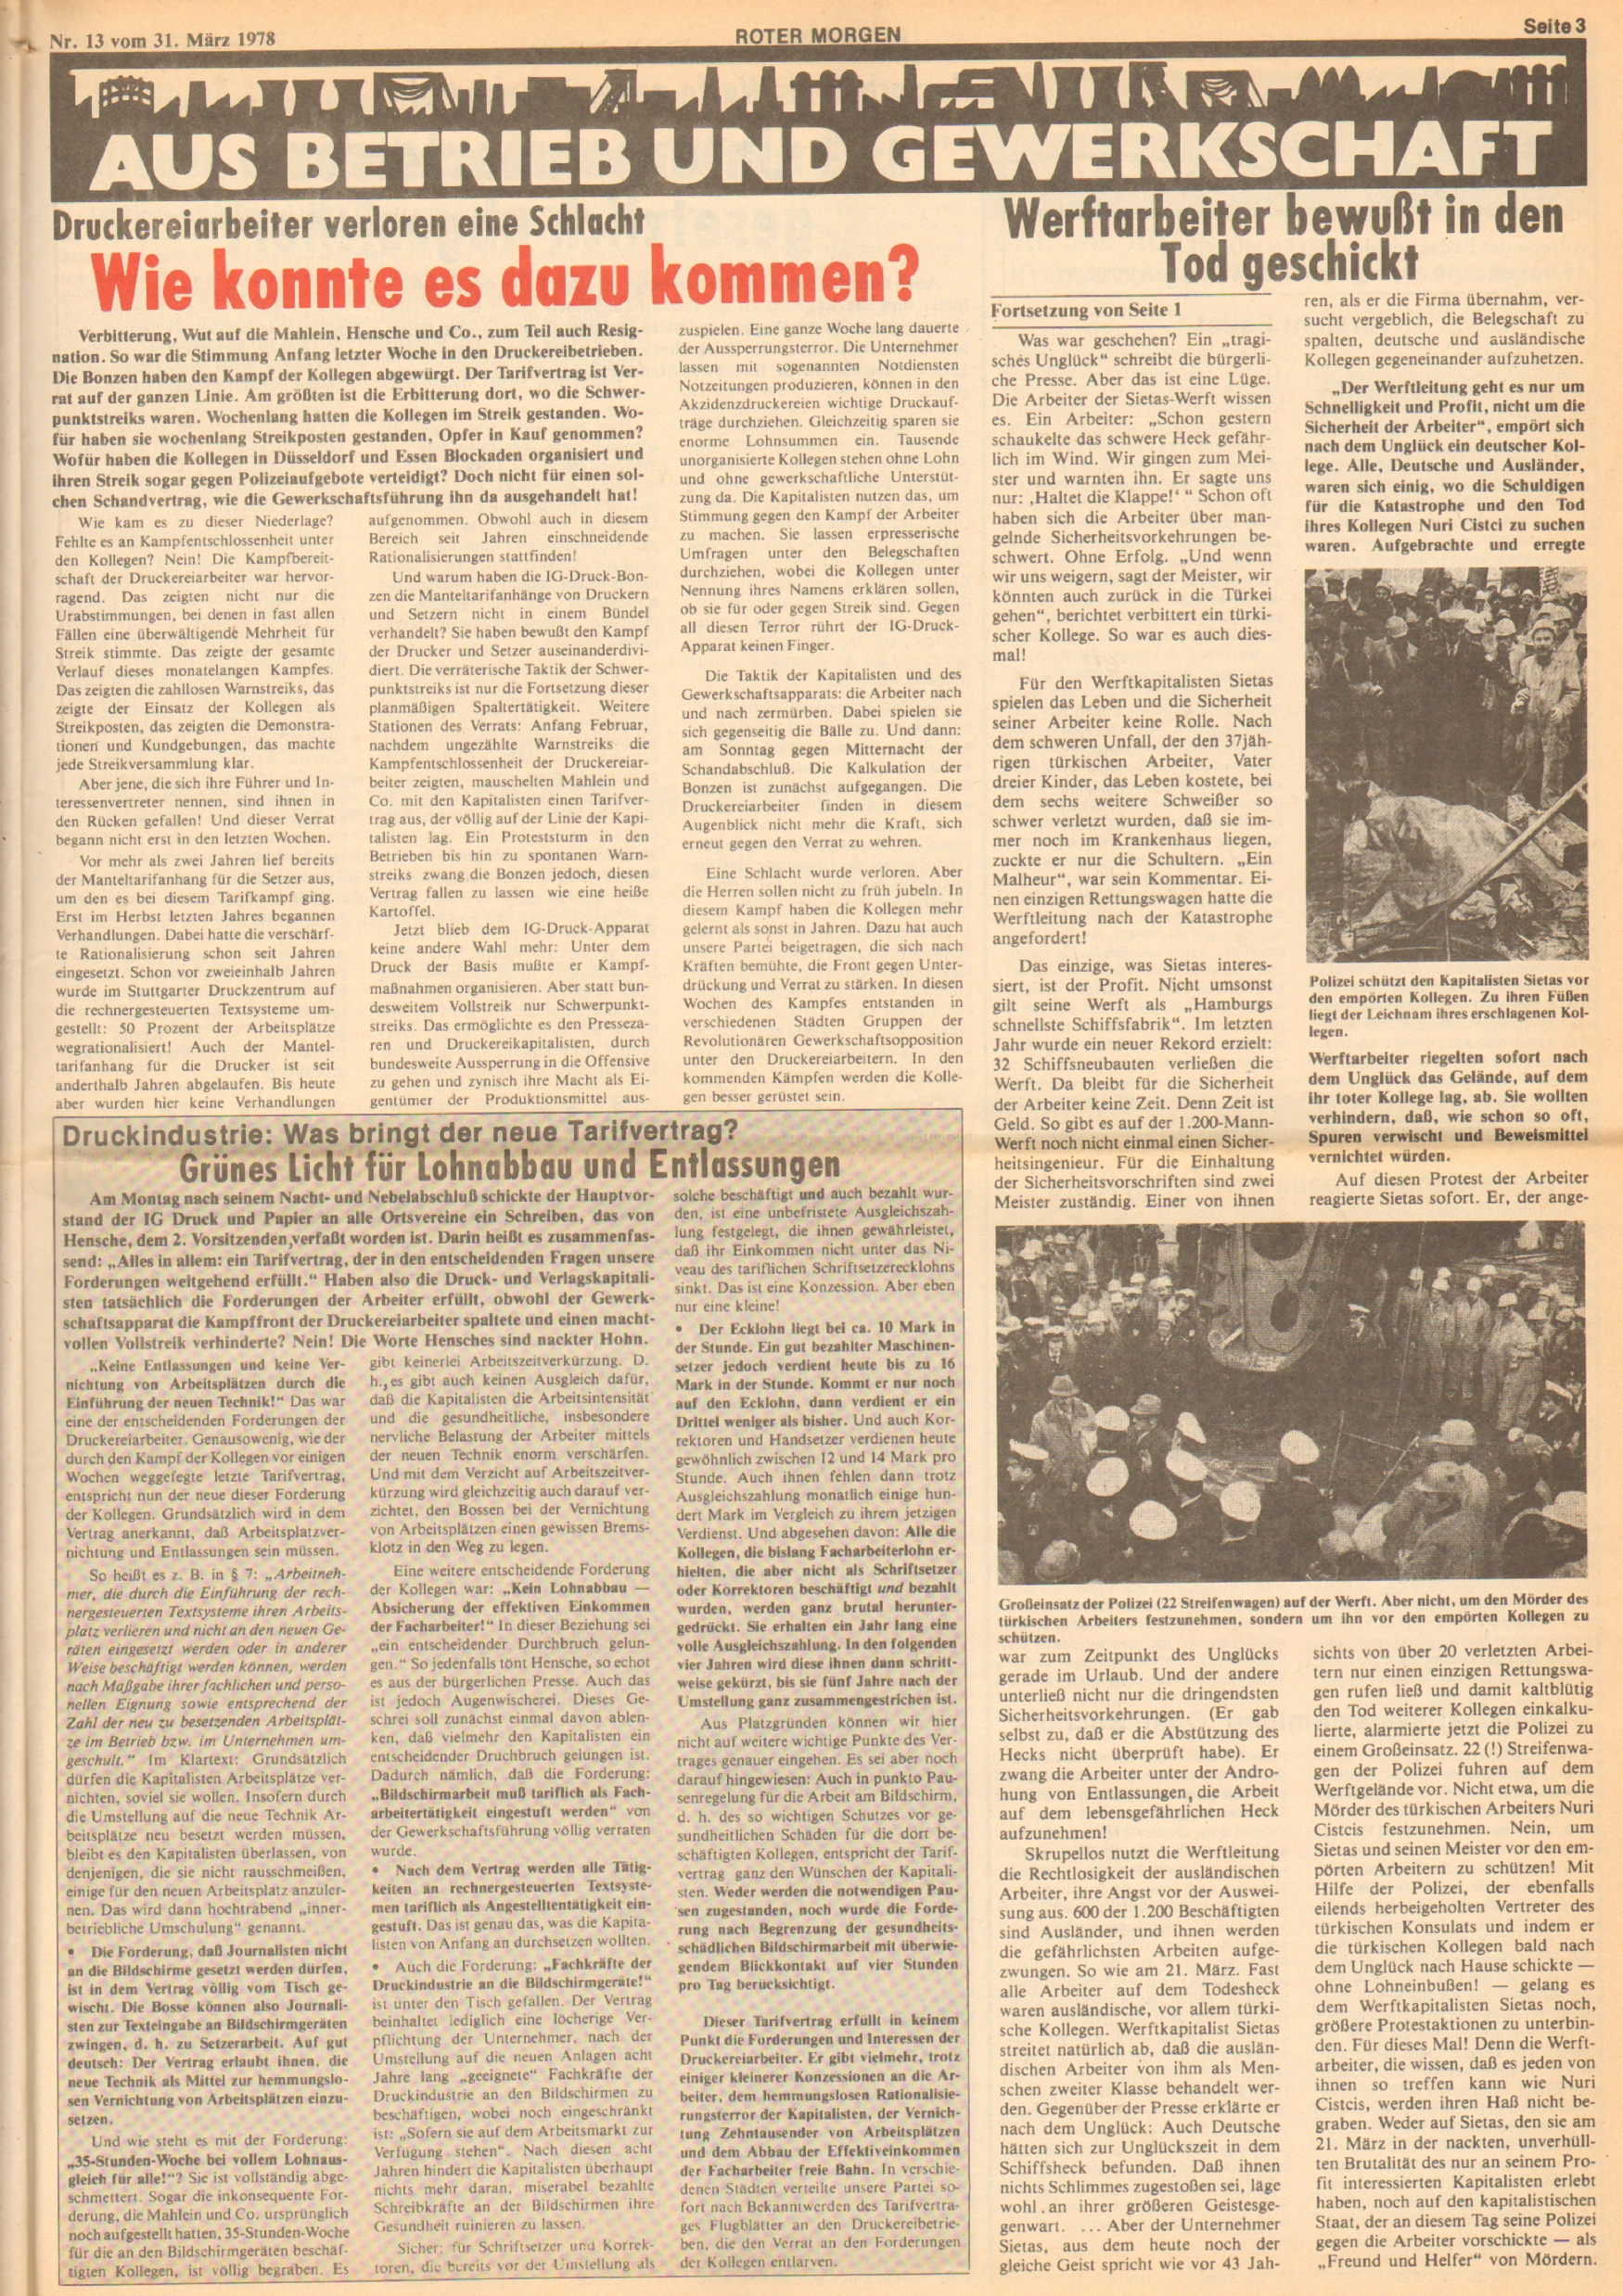 Roter Morgen, 12. Jg., 31. März 1978, Nr. 13, Seite 3